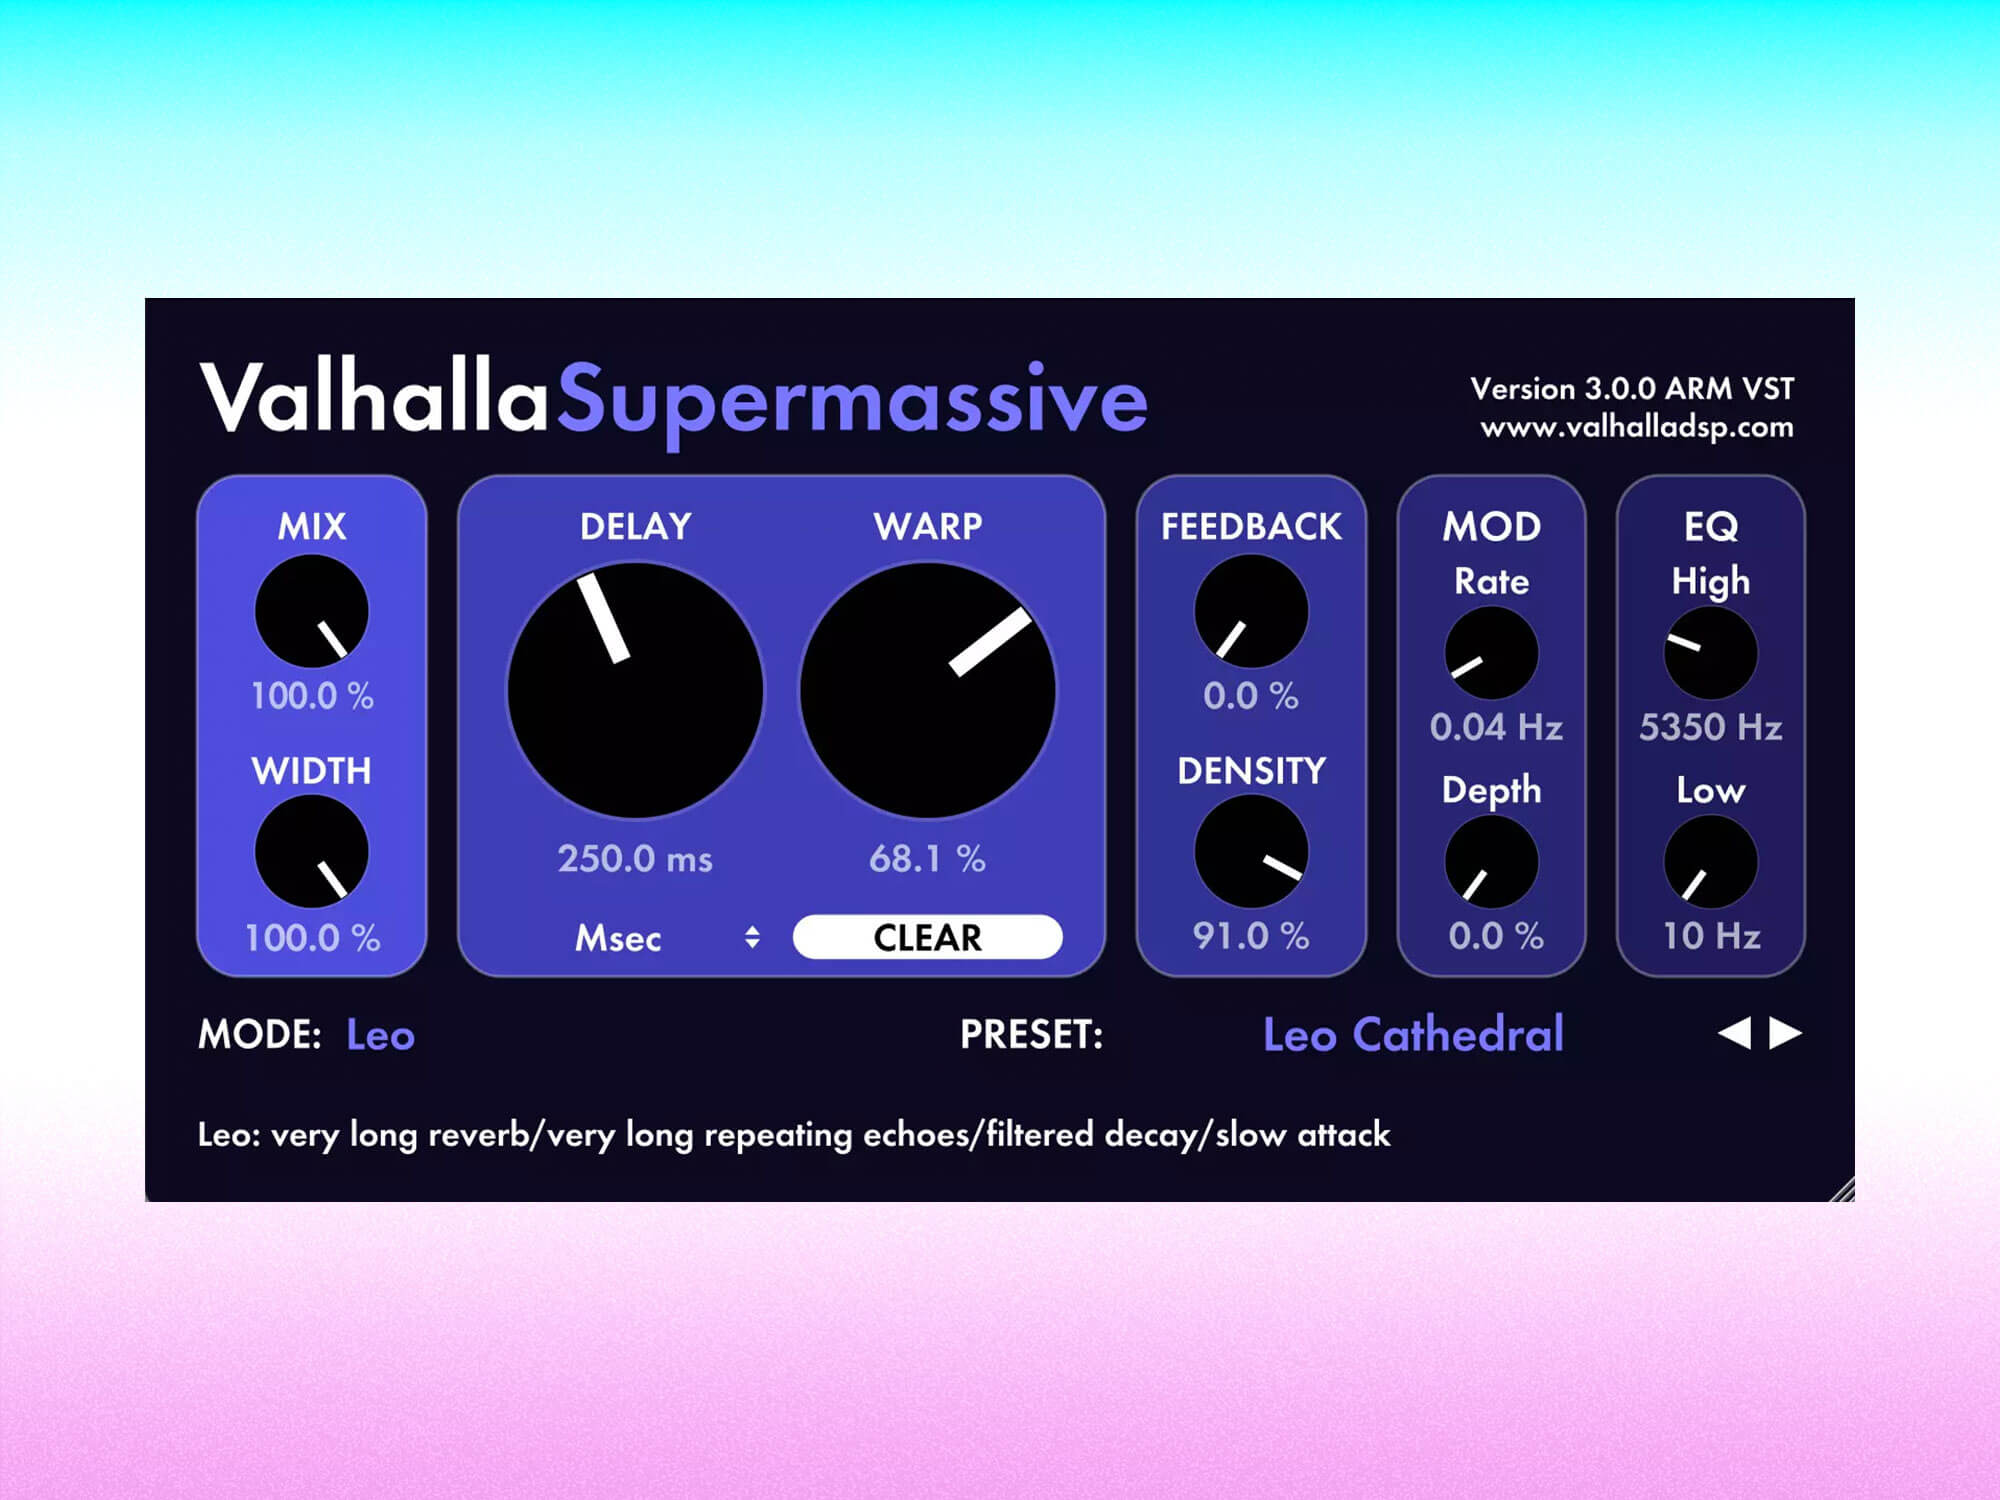 ValhallaDSP Supermassive